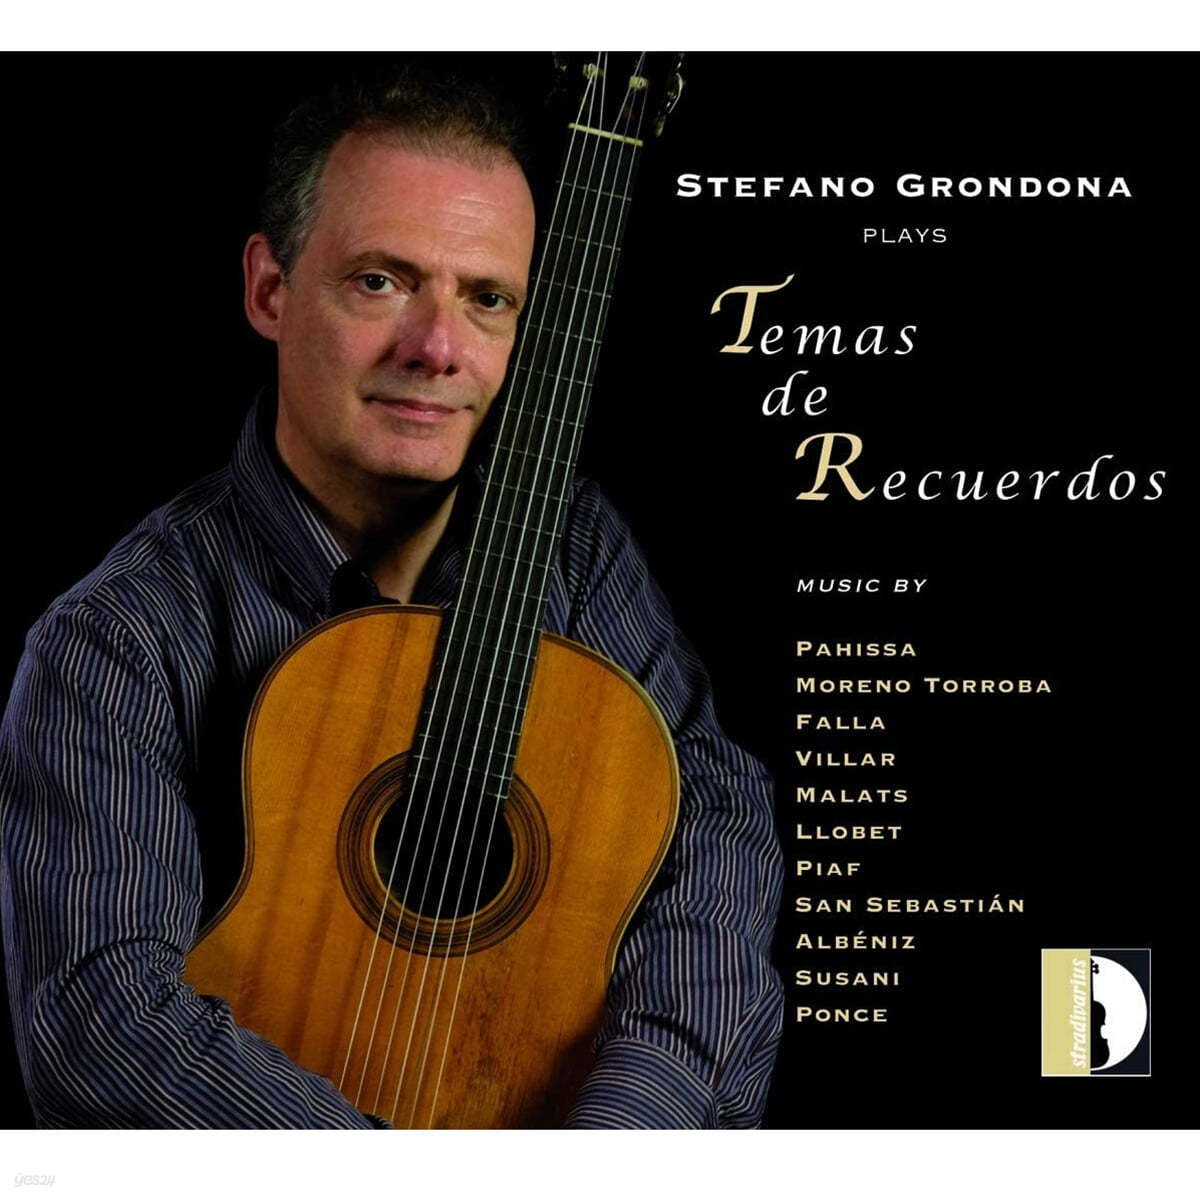 스테파노 그론도나: 기타 연주로 듣는 추억의 세가지 테마 (Stefano Grondona plays Temas de Recuerdos) 